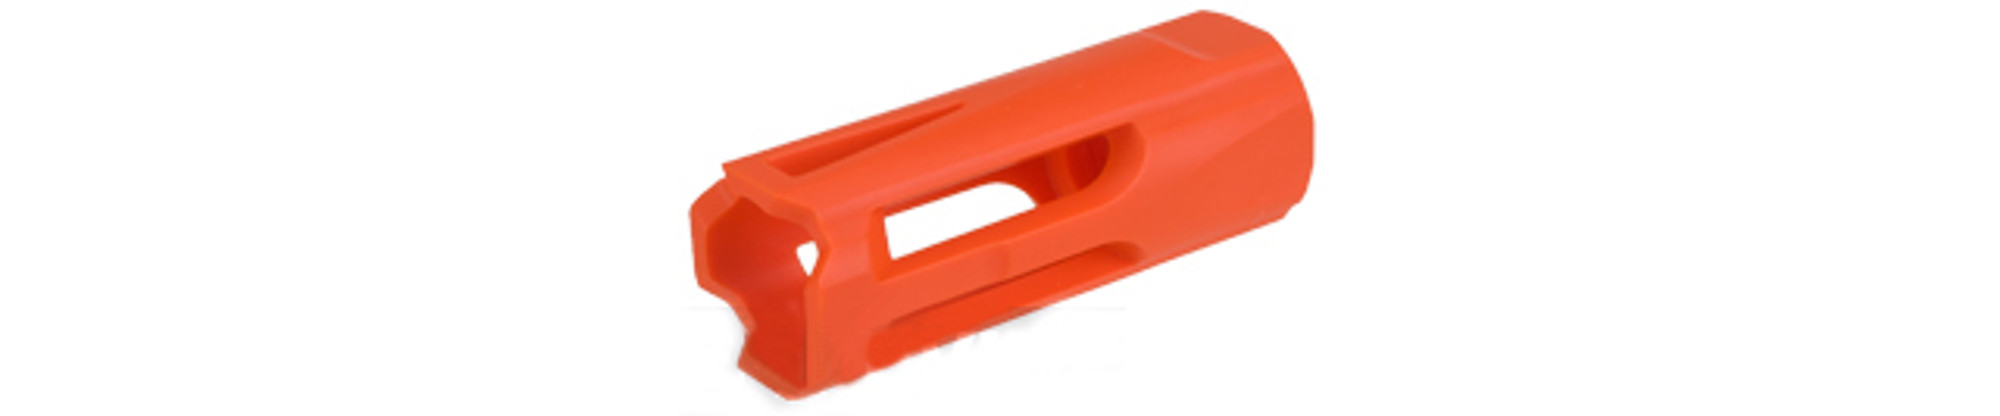 Krytac Replacement Orange Flash Hider (Polymer)